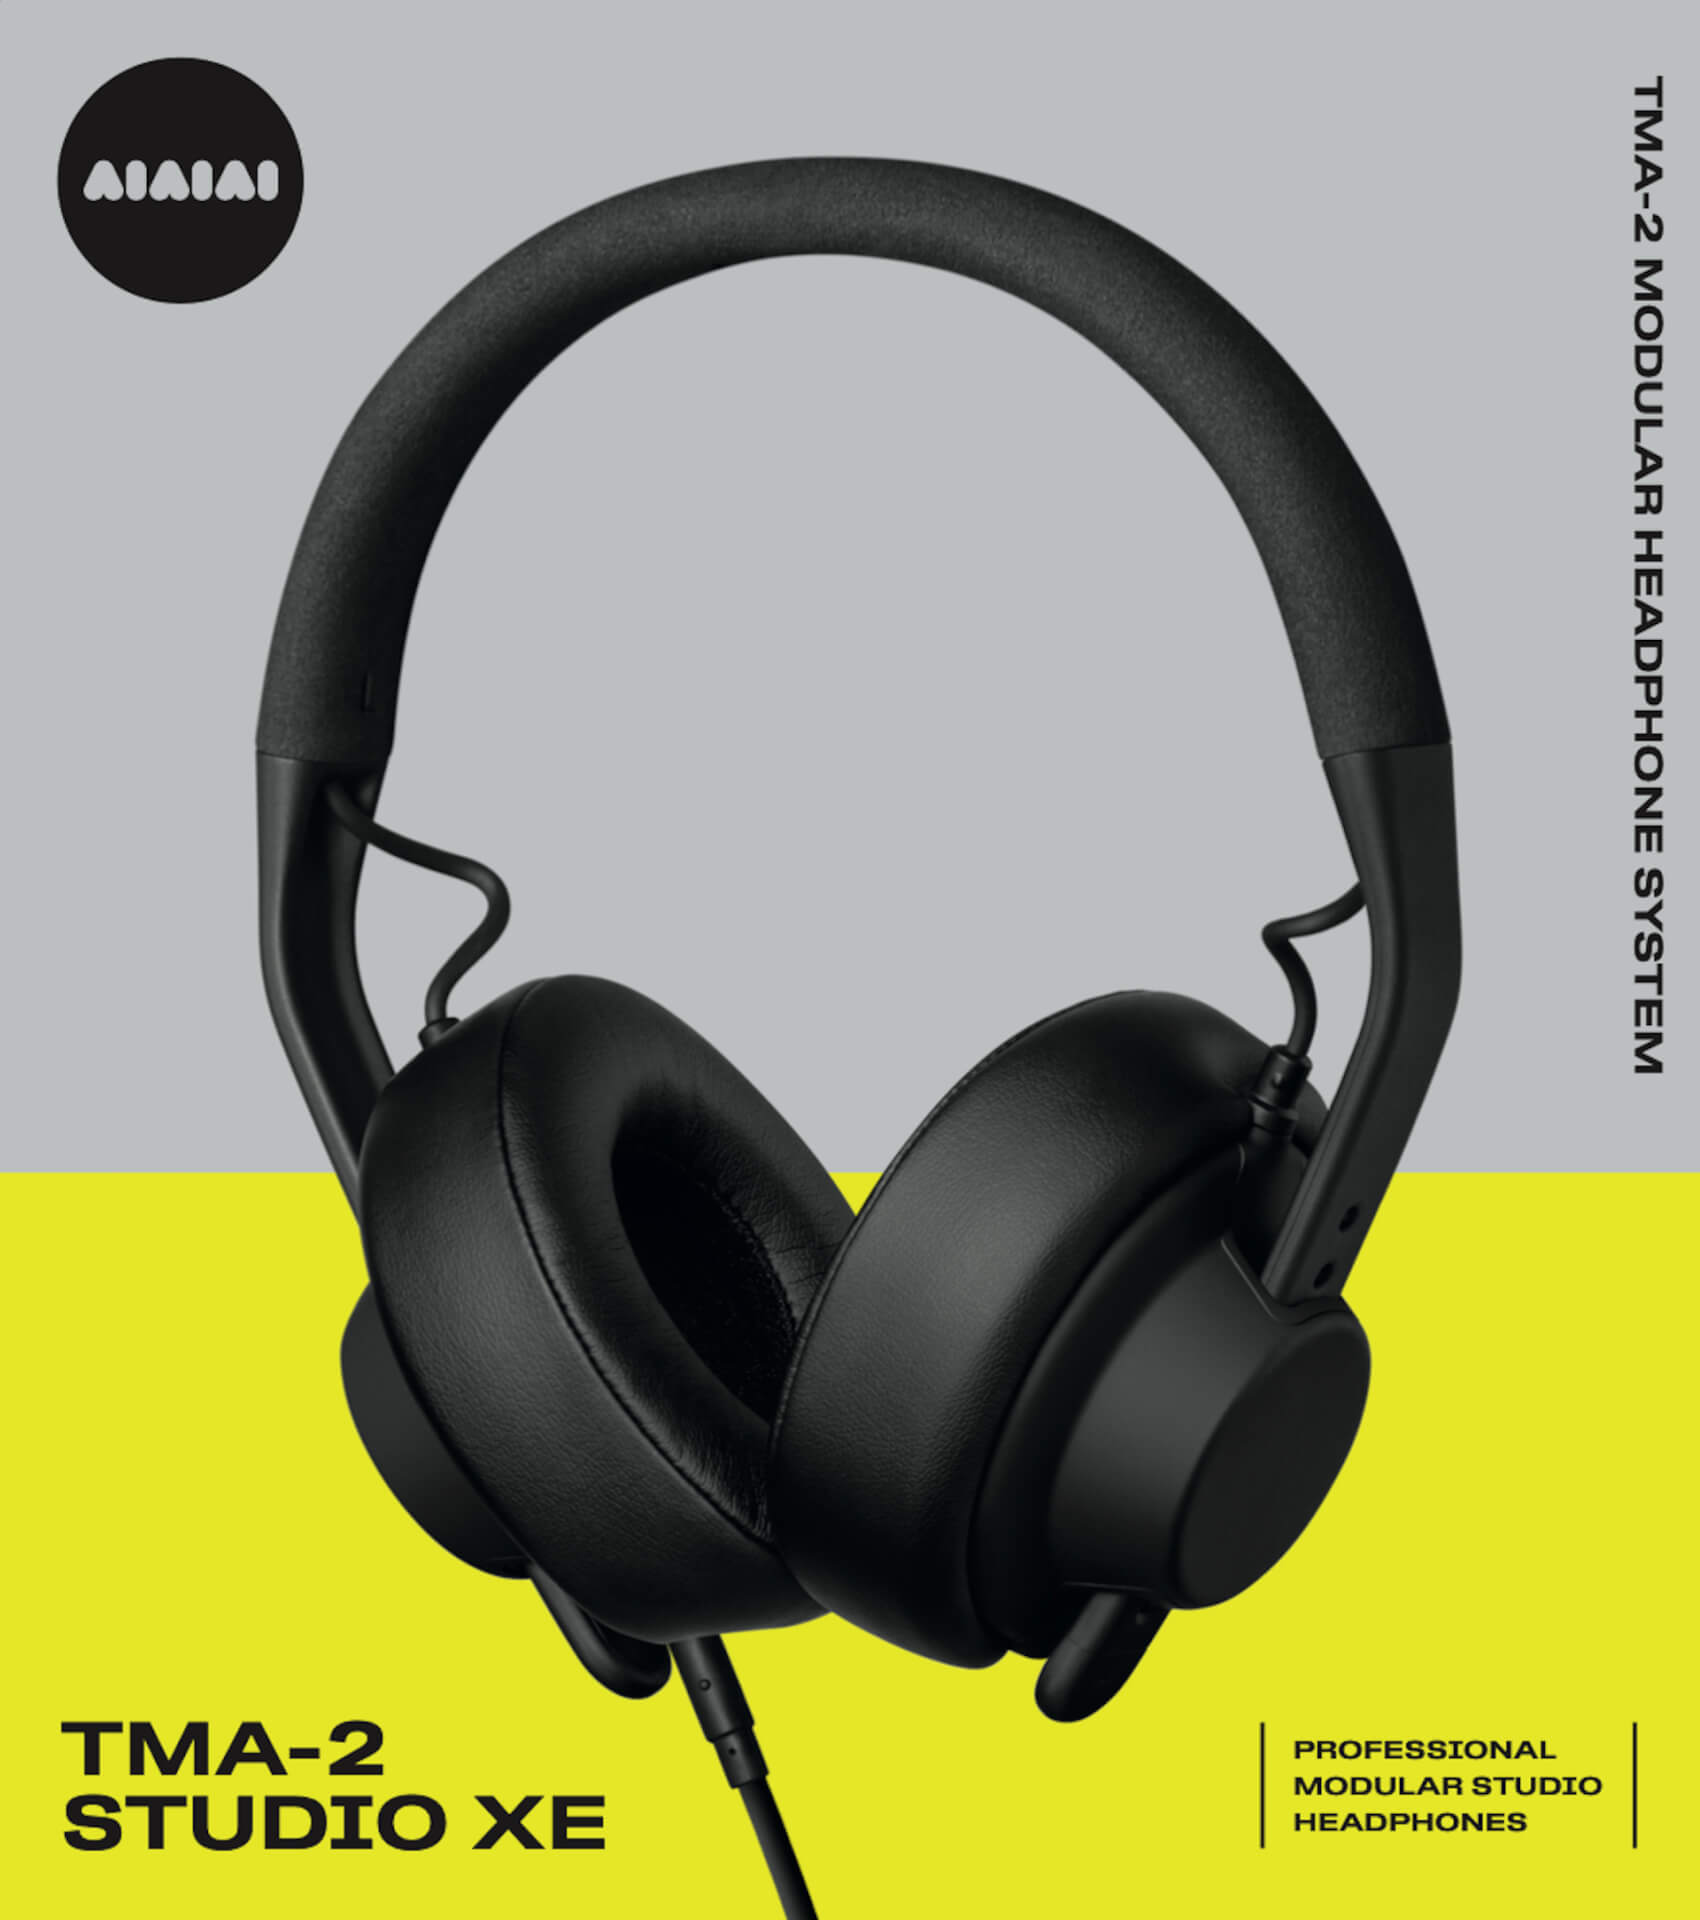 デンマークのオーディオブランドAIAIAIからスタジオ制作向けヘッドホン『TMA-2 Studio』＆『TMA-2 Studio XE』が発売決定！ tech210816_aiaiai_6